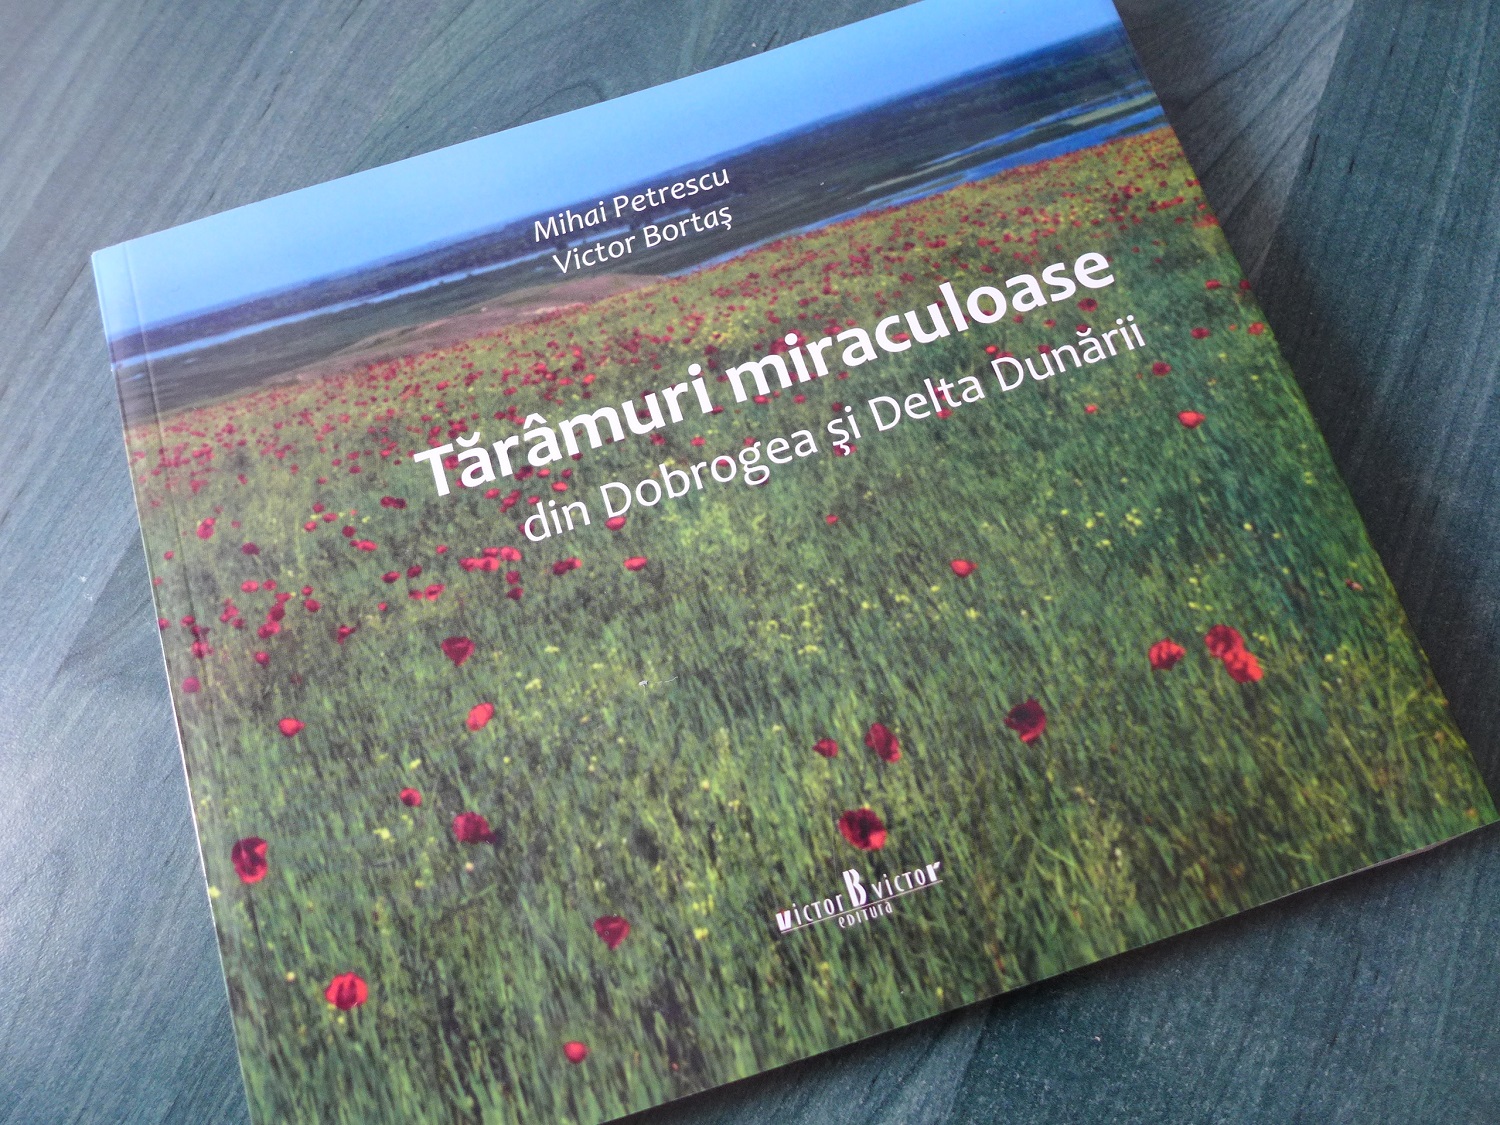 En 2016, il a publié un livre qui s’appelle « Contrées miraculeuses de la Dobrogea et du delta du Danube ». C’est un recueil de photos de paysages, de la faune, de la flore et des habitants de cette région.